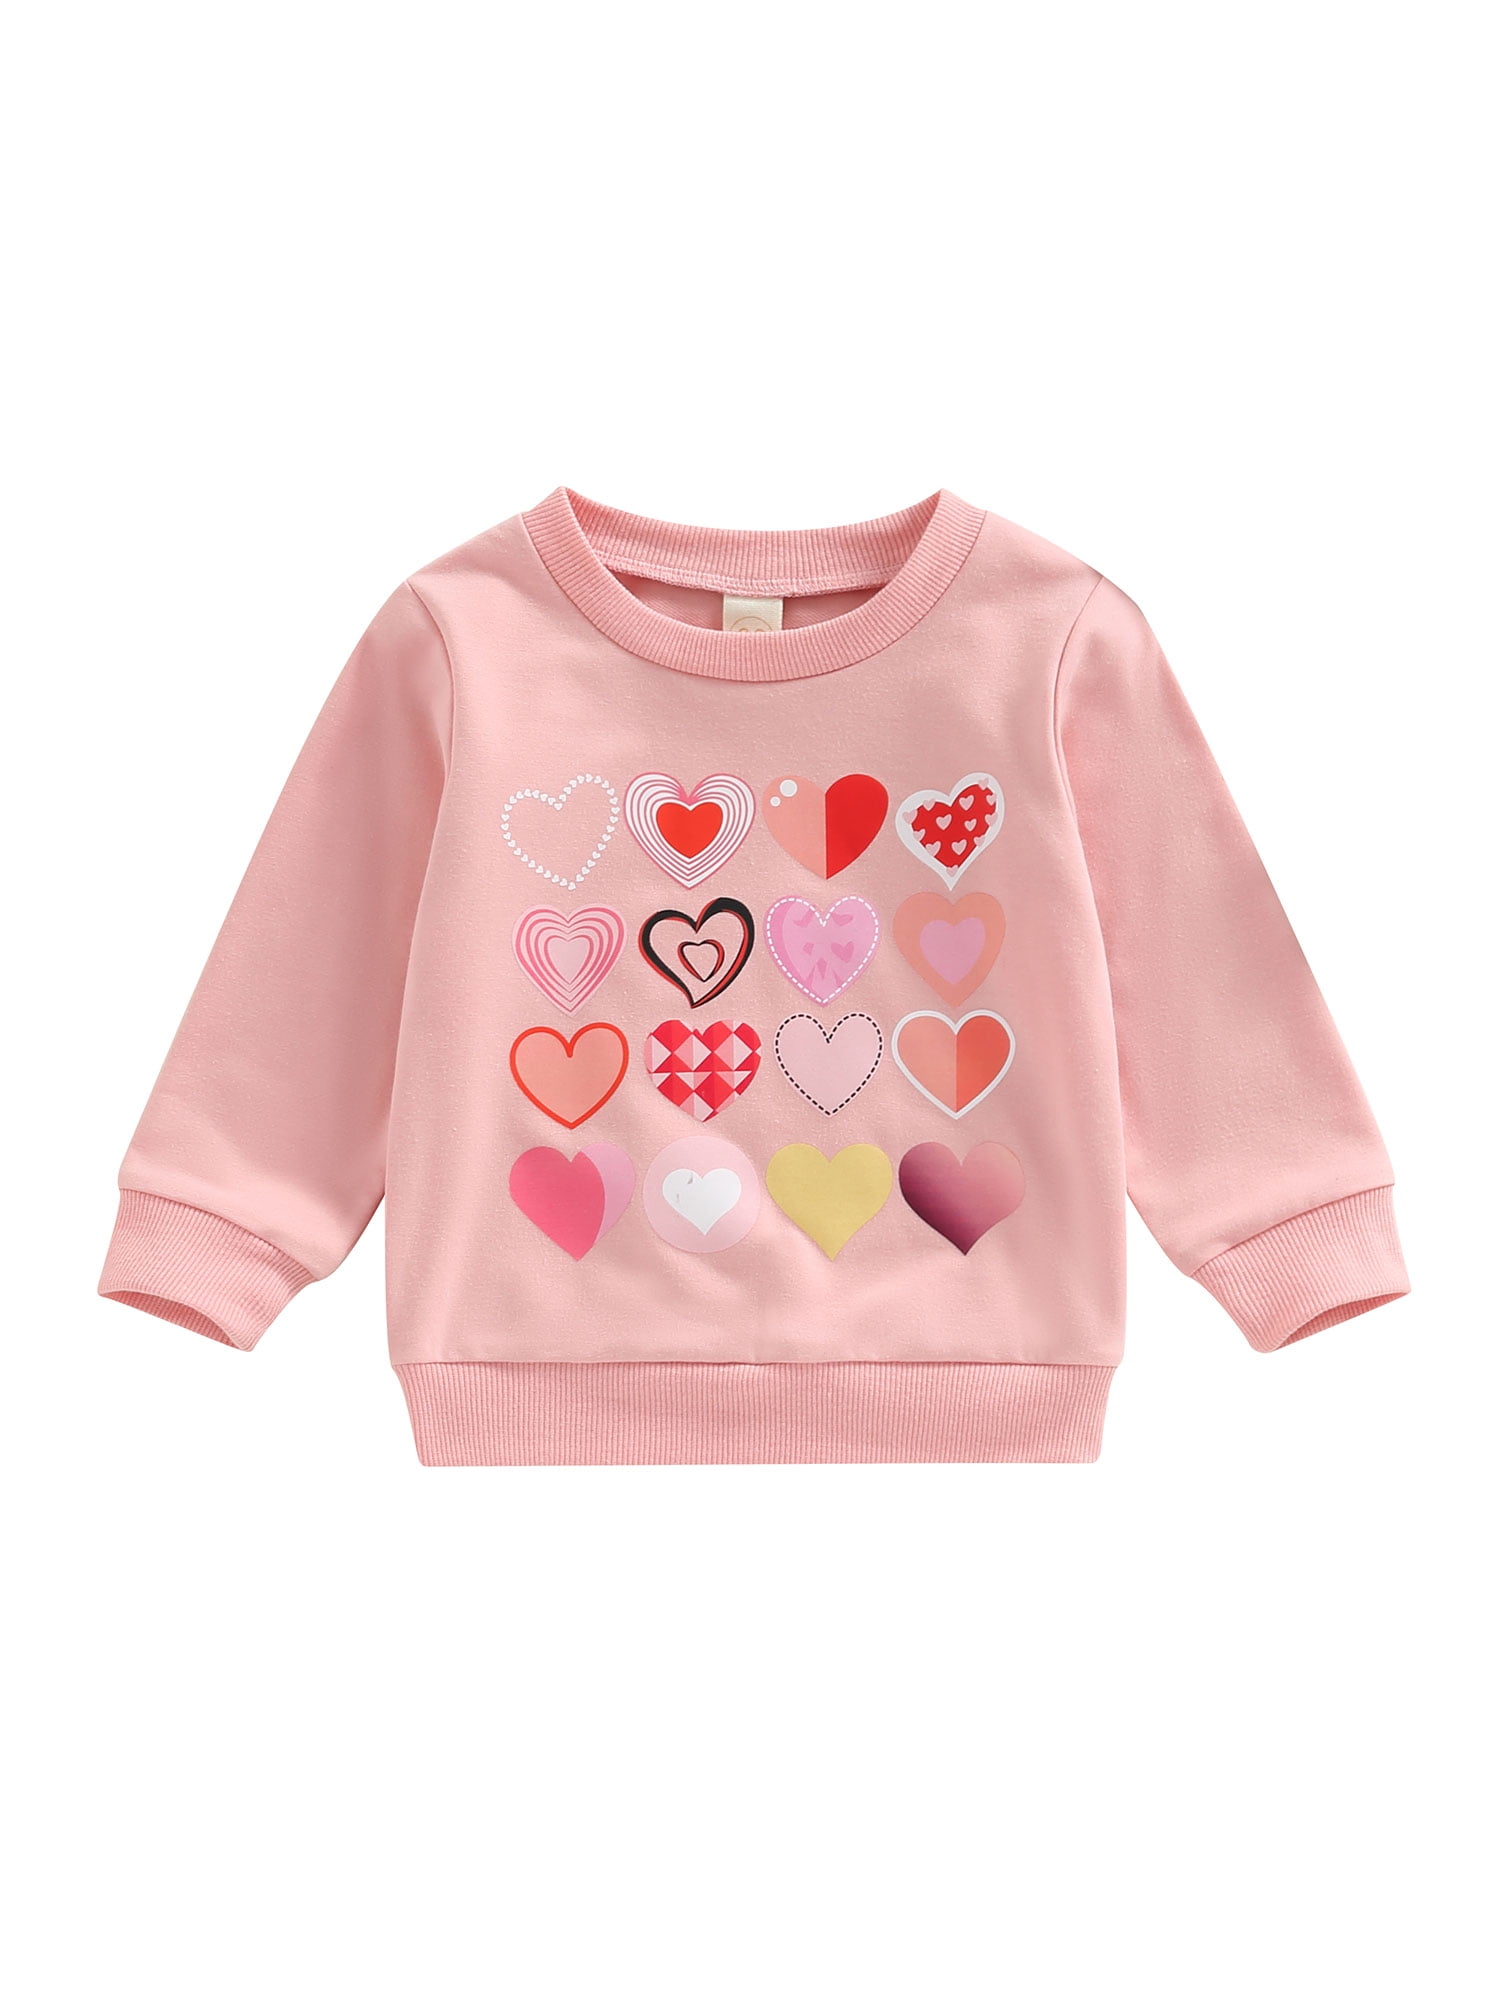 Peyakidsaa Valentine's Day Toddler Baby Girls Sweatshirt Casual Heart ...